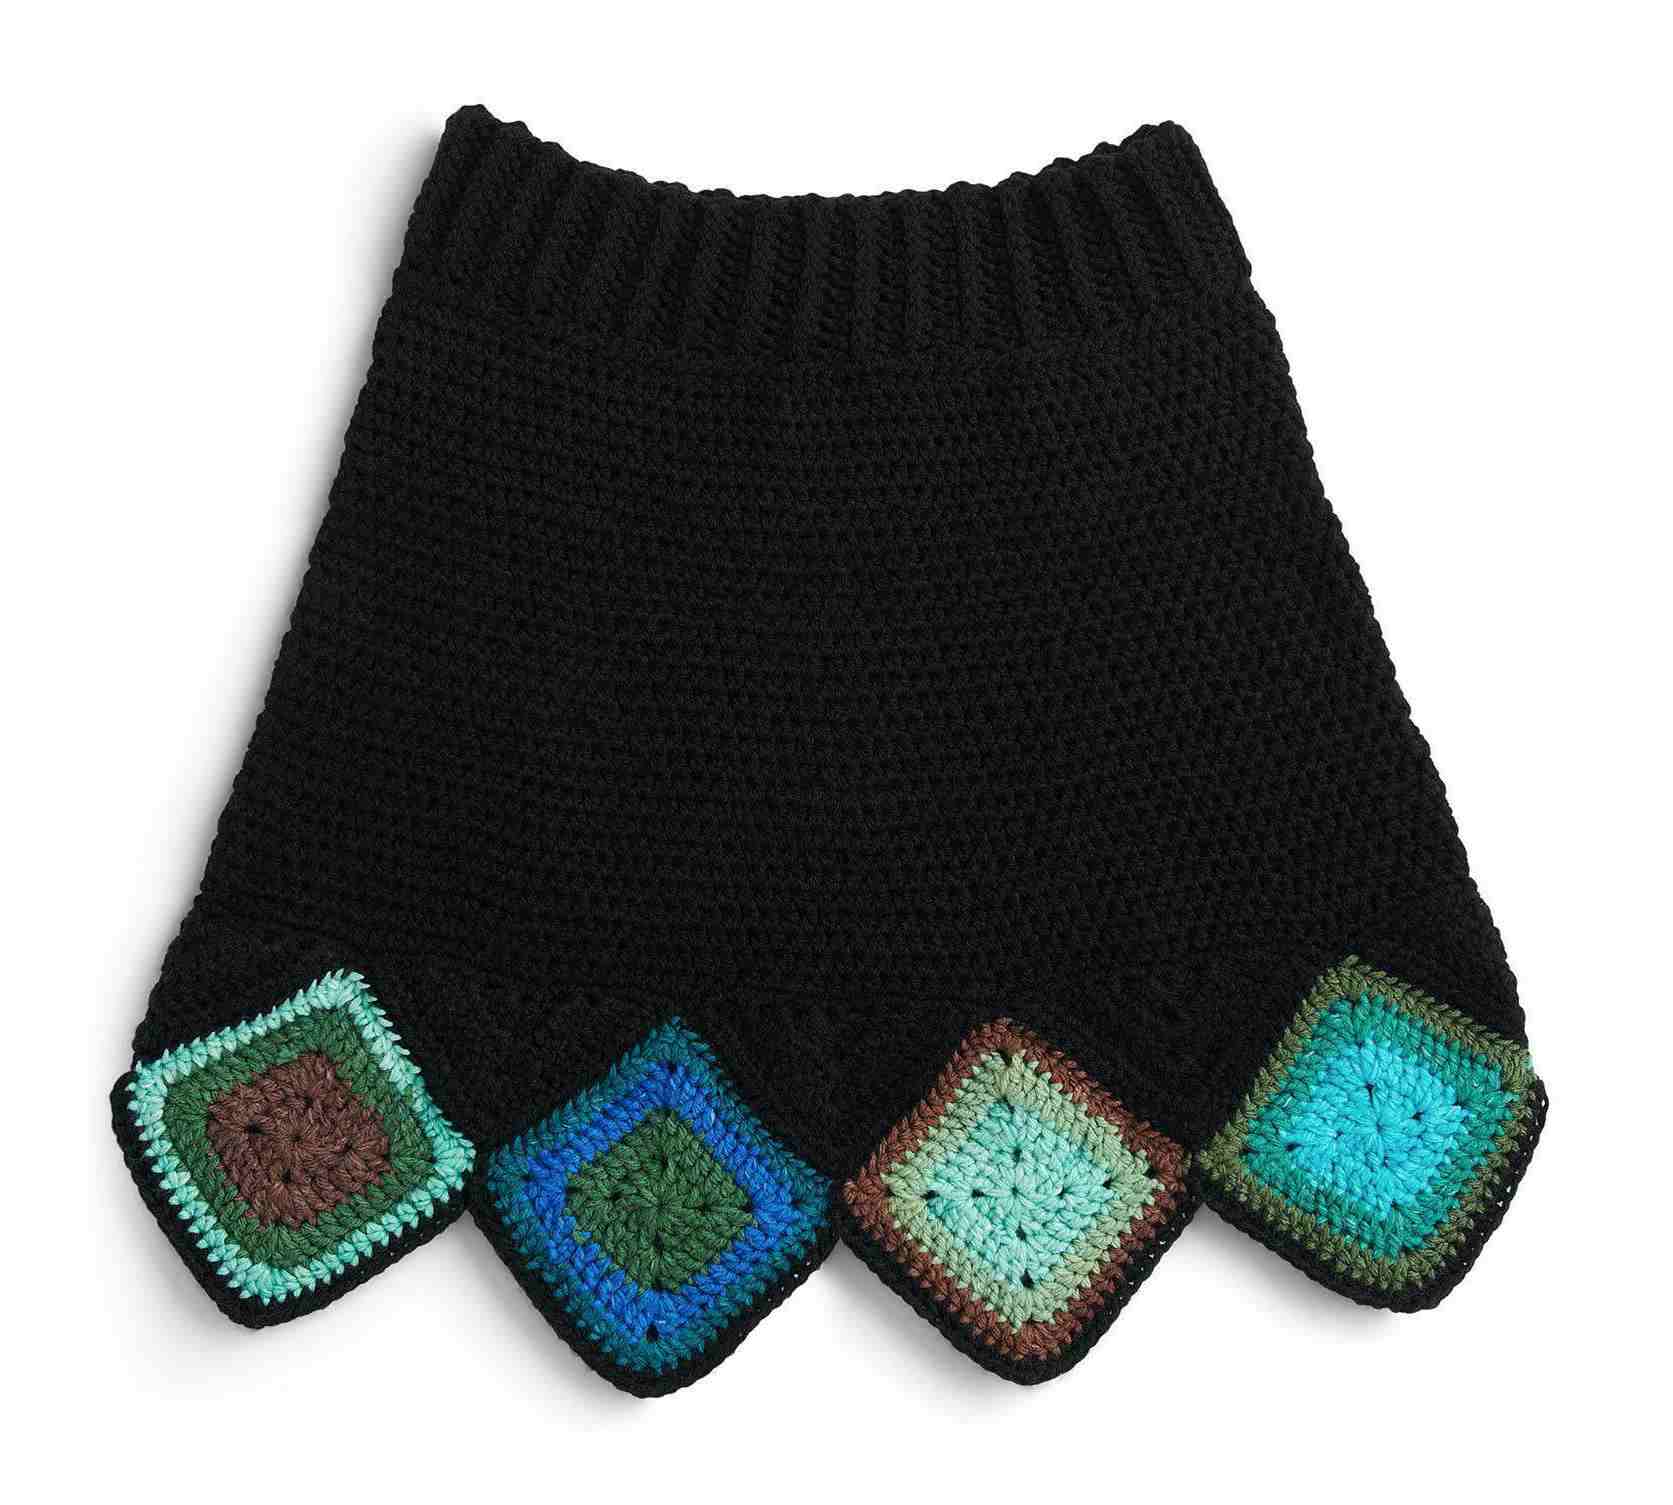 Crochet Granny Square Skirt - Free Crochet Pattern